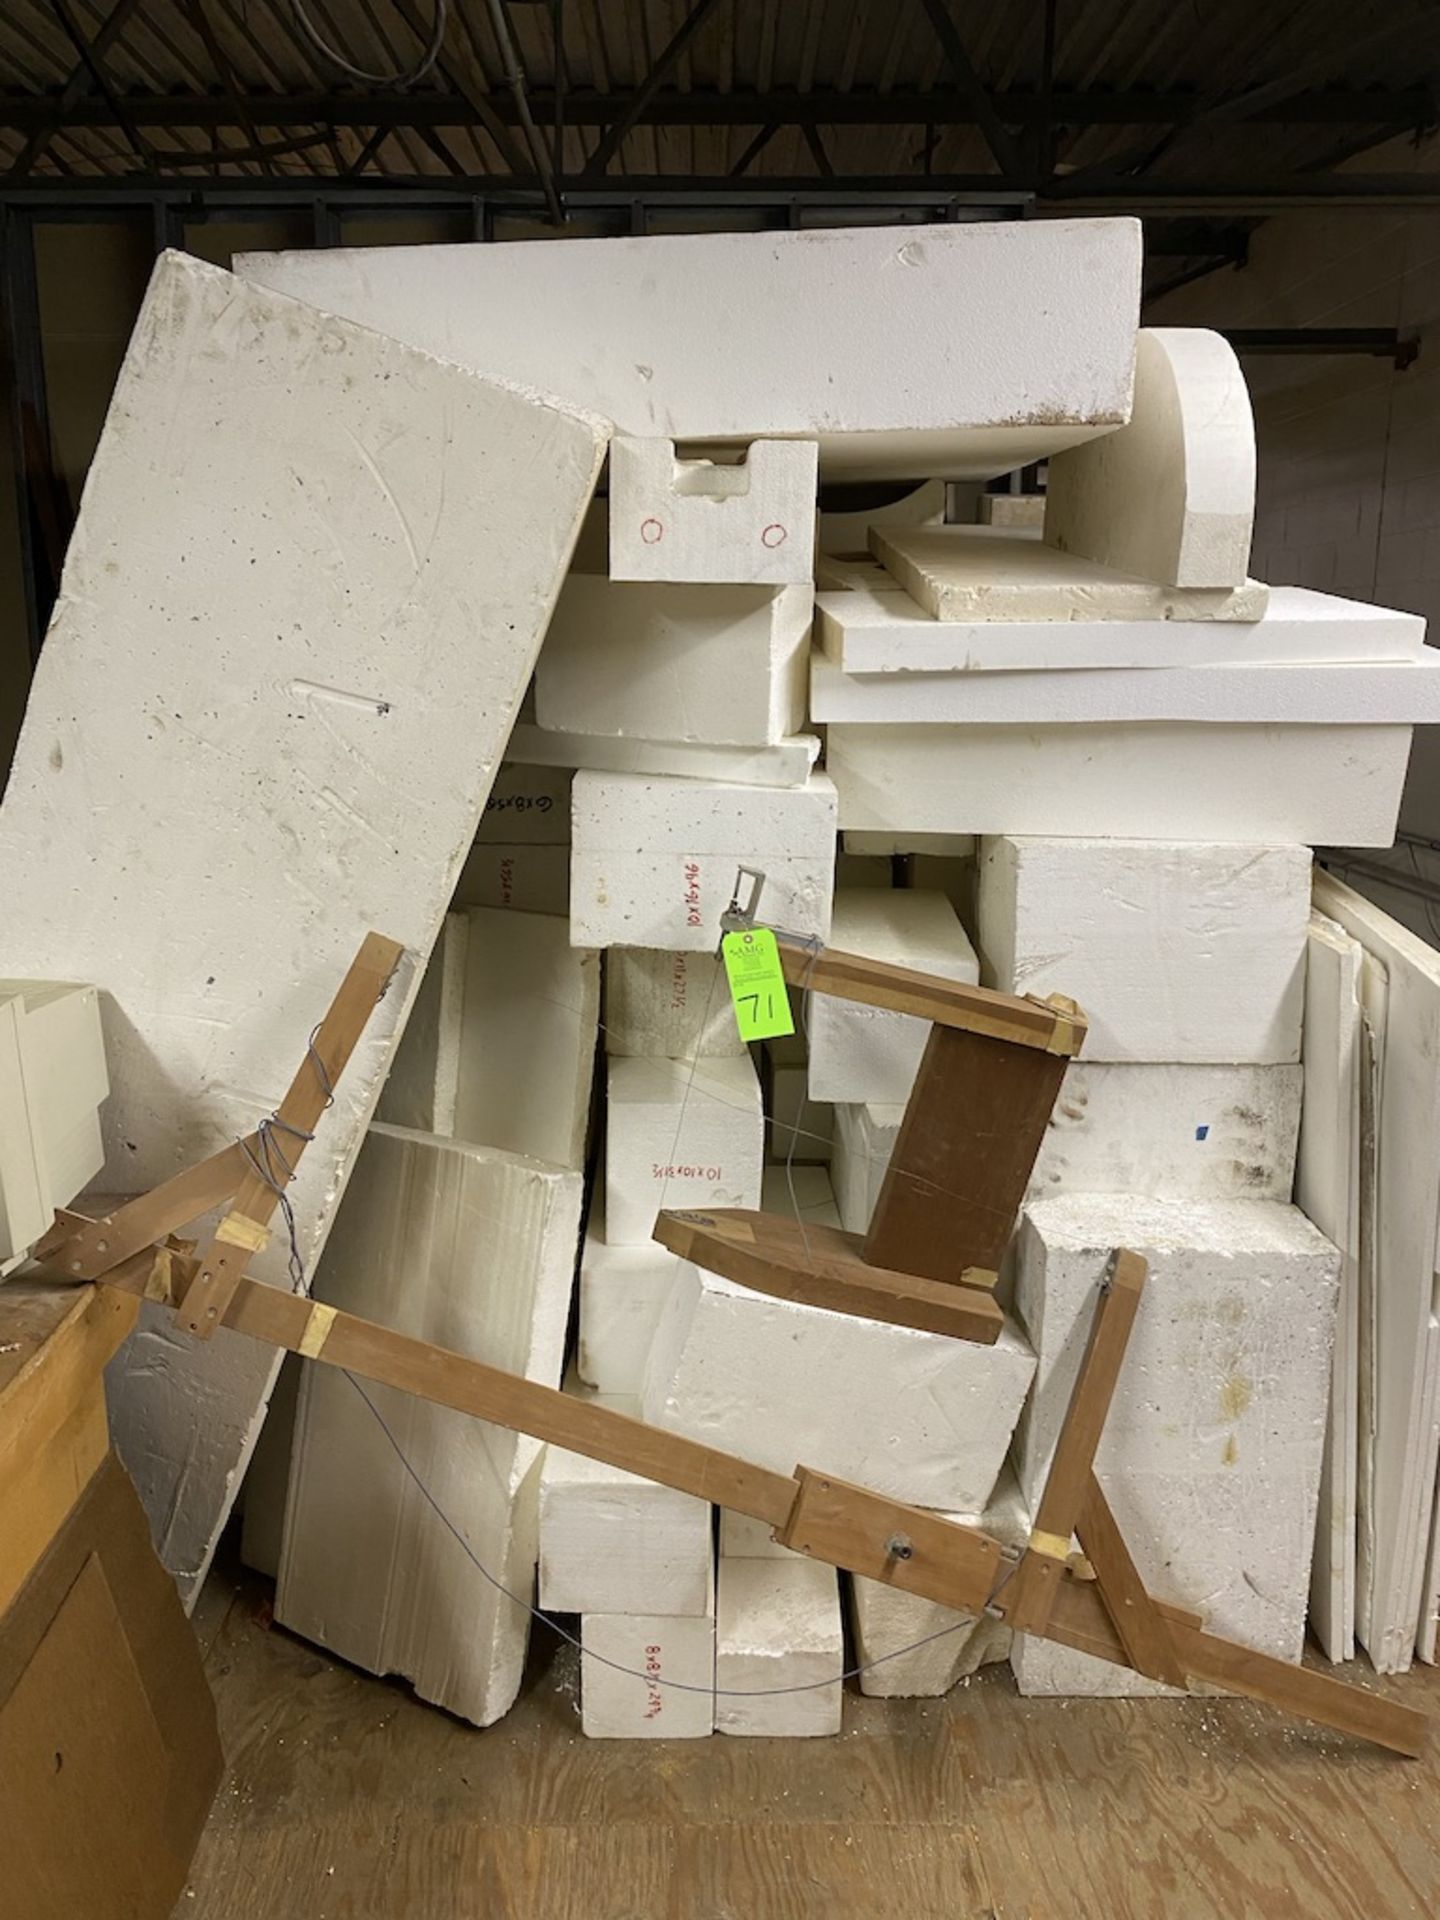 styrofoam blocks for die and model making